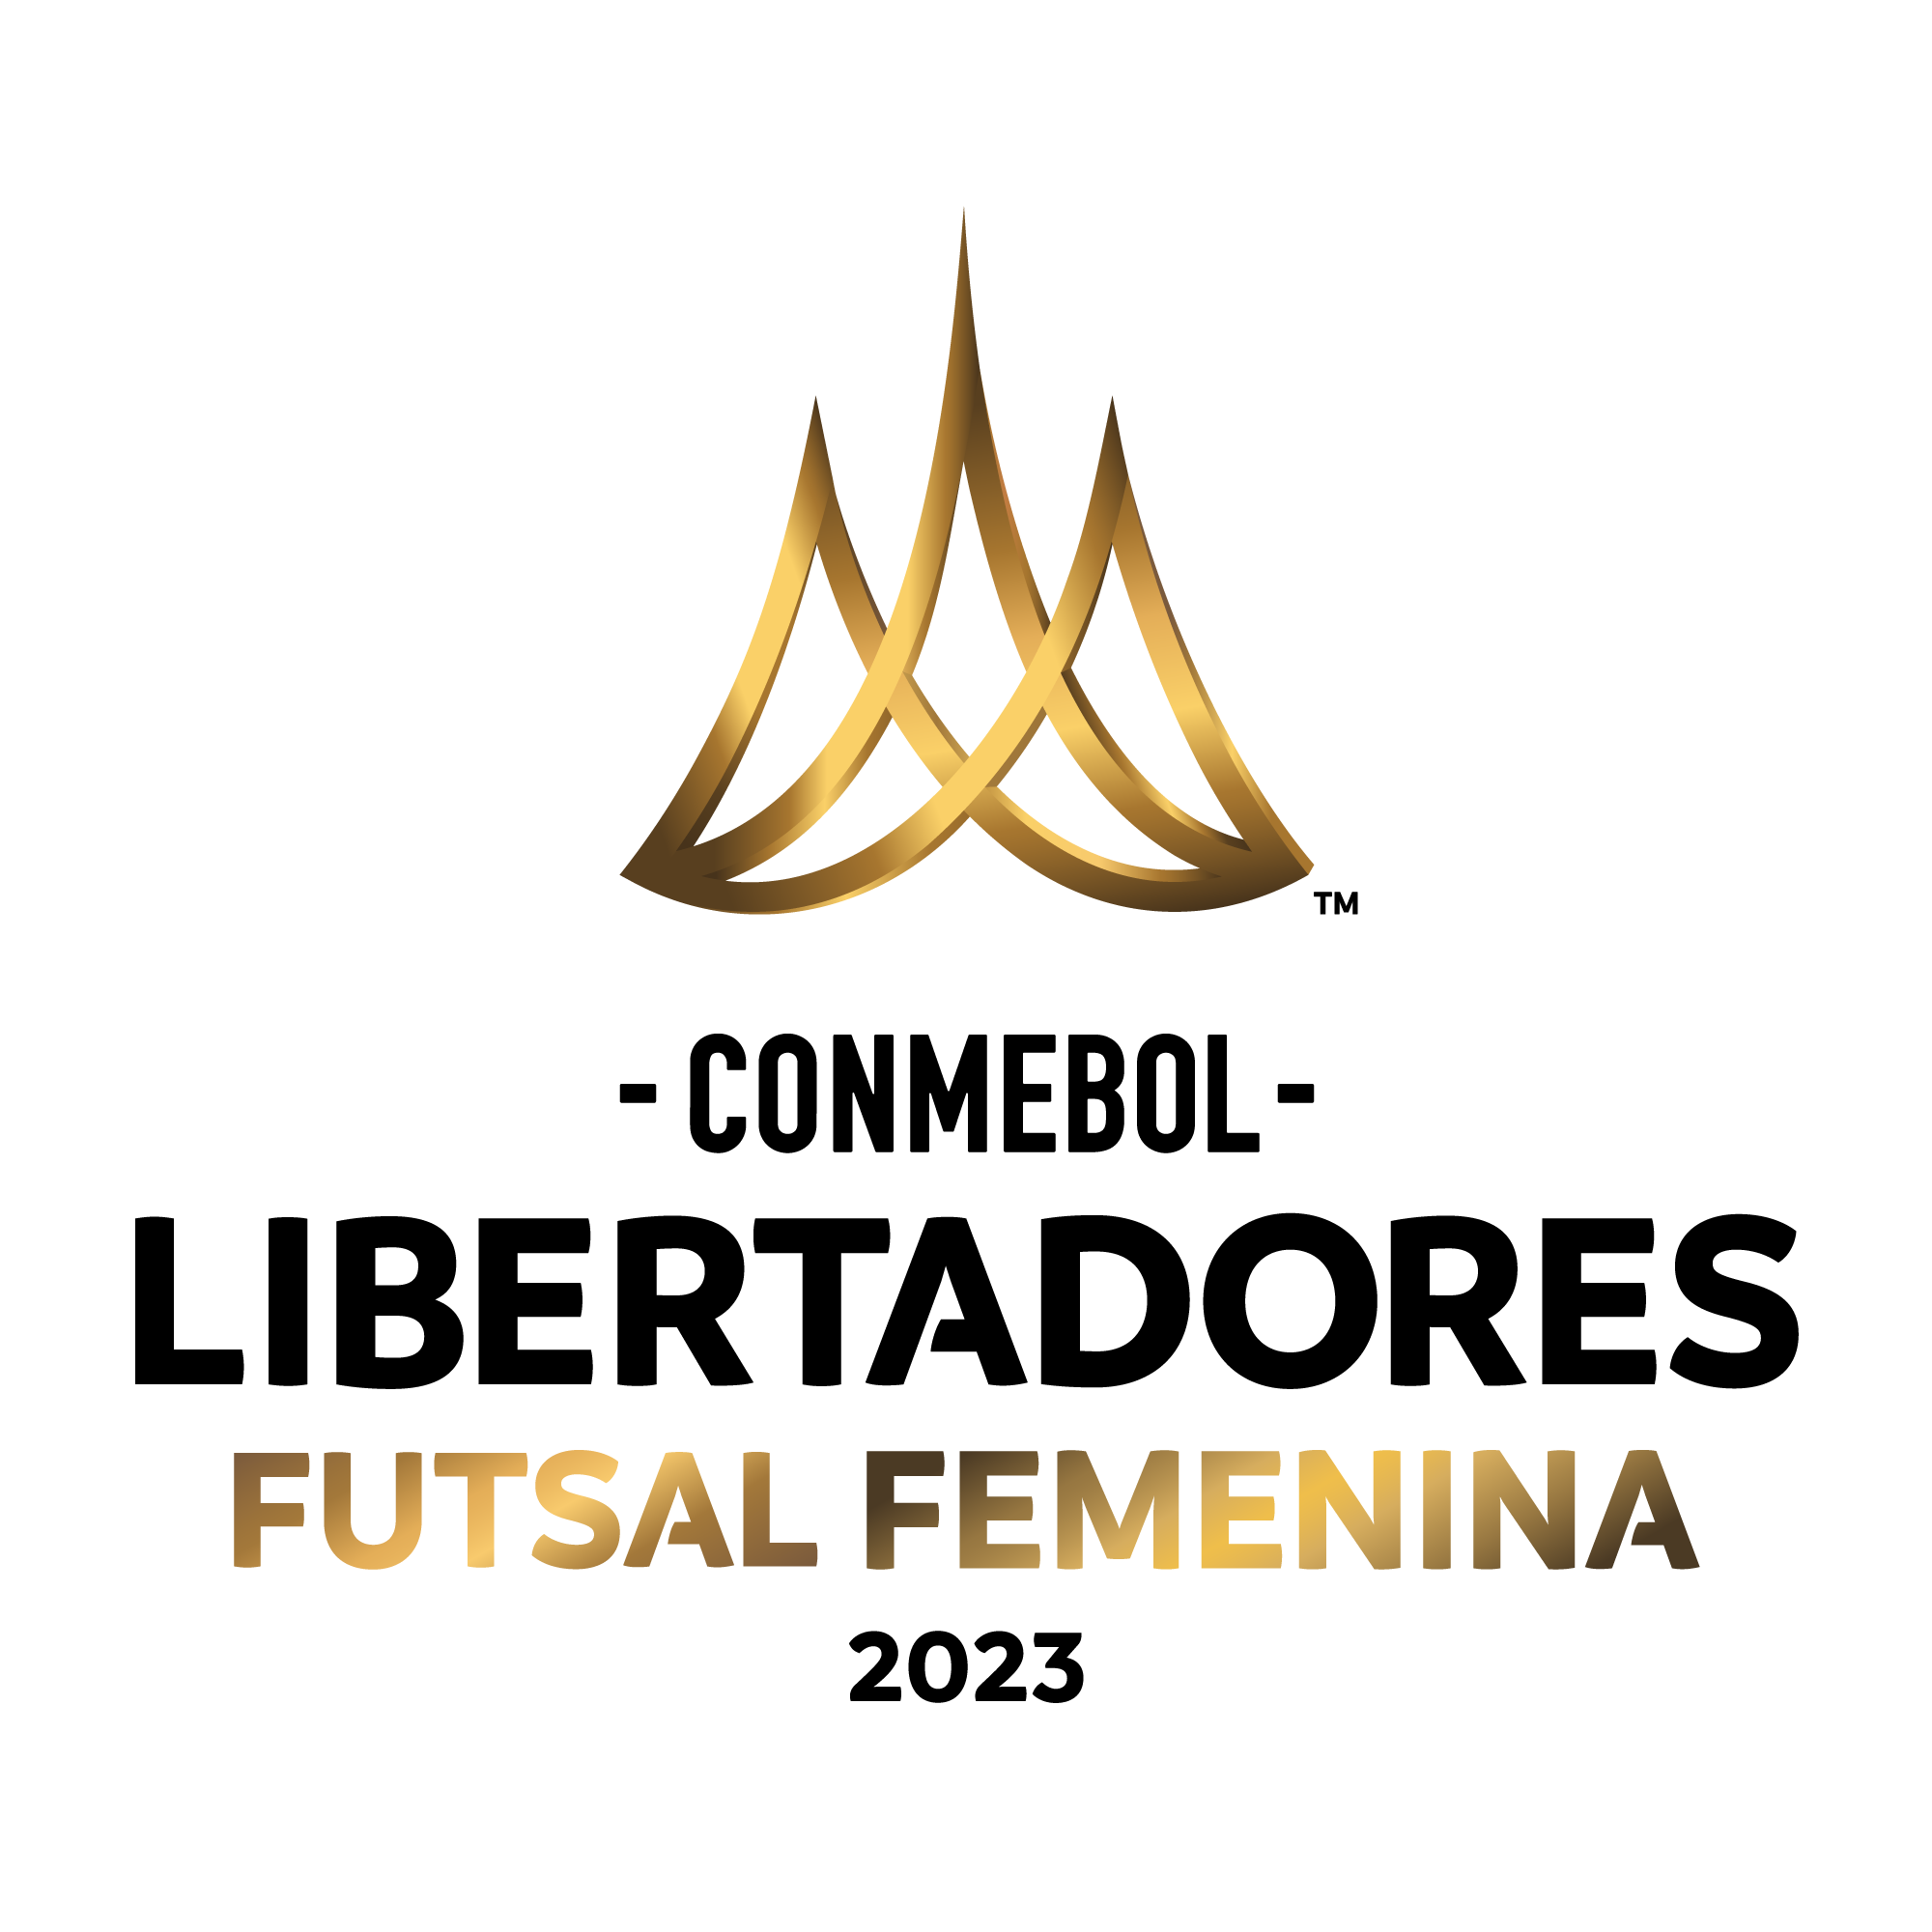 CONMEBOL Libertadores Futsal Femenina CONMEBOL